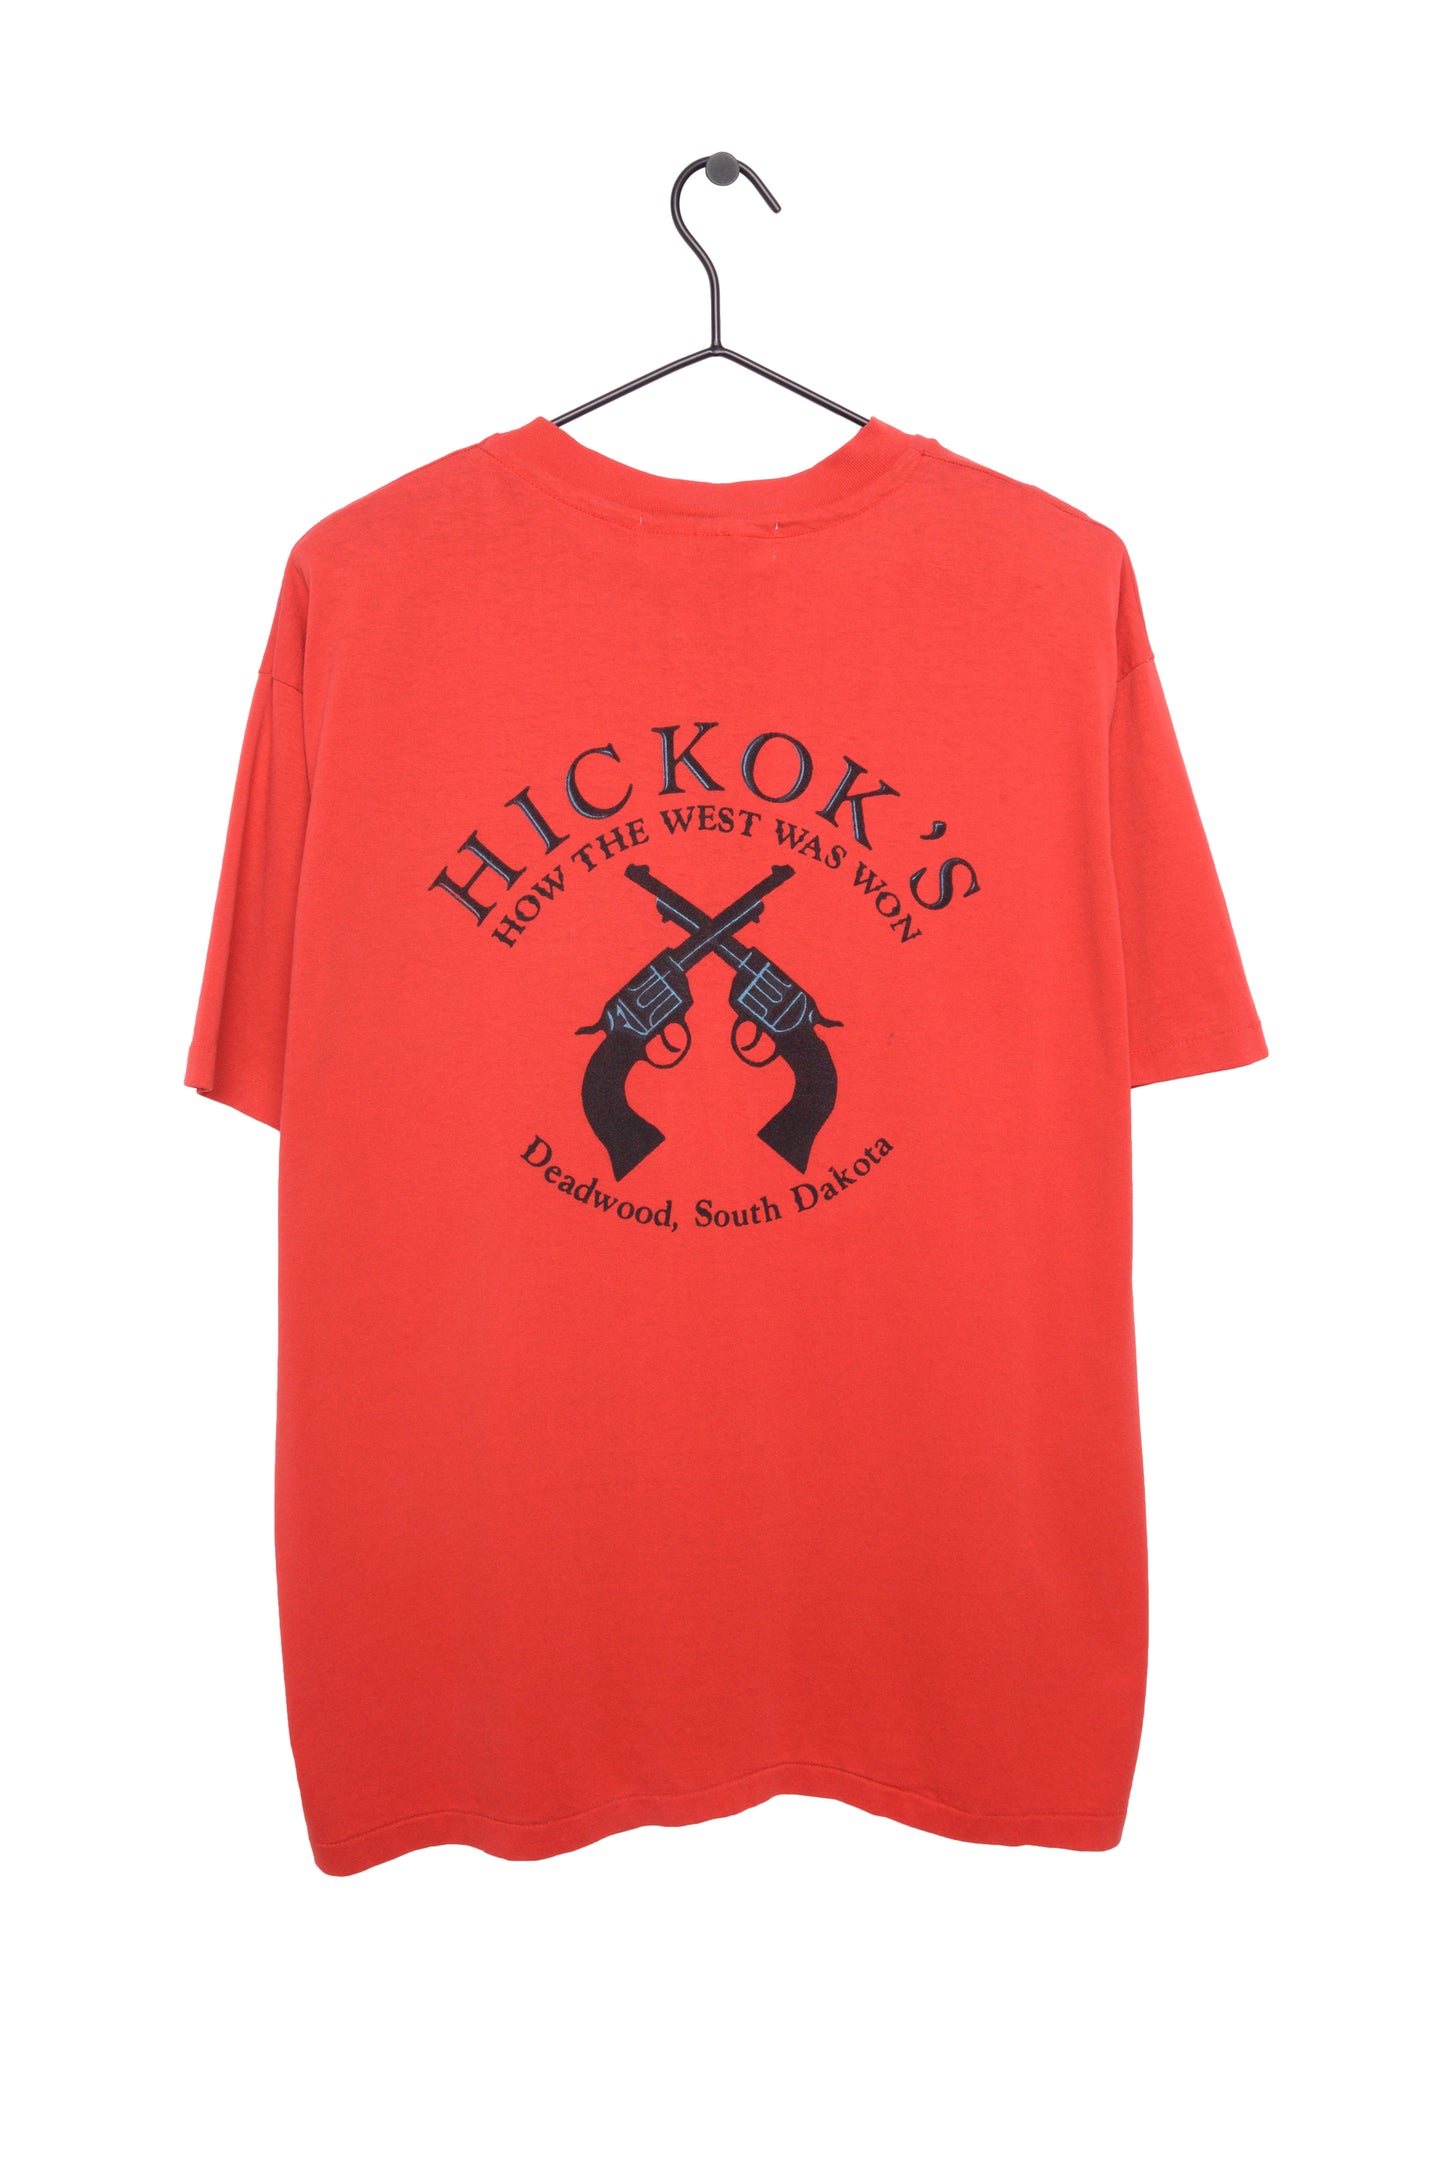 Hickok's South Dakota Tee USA